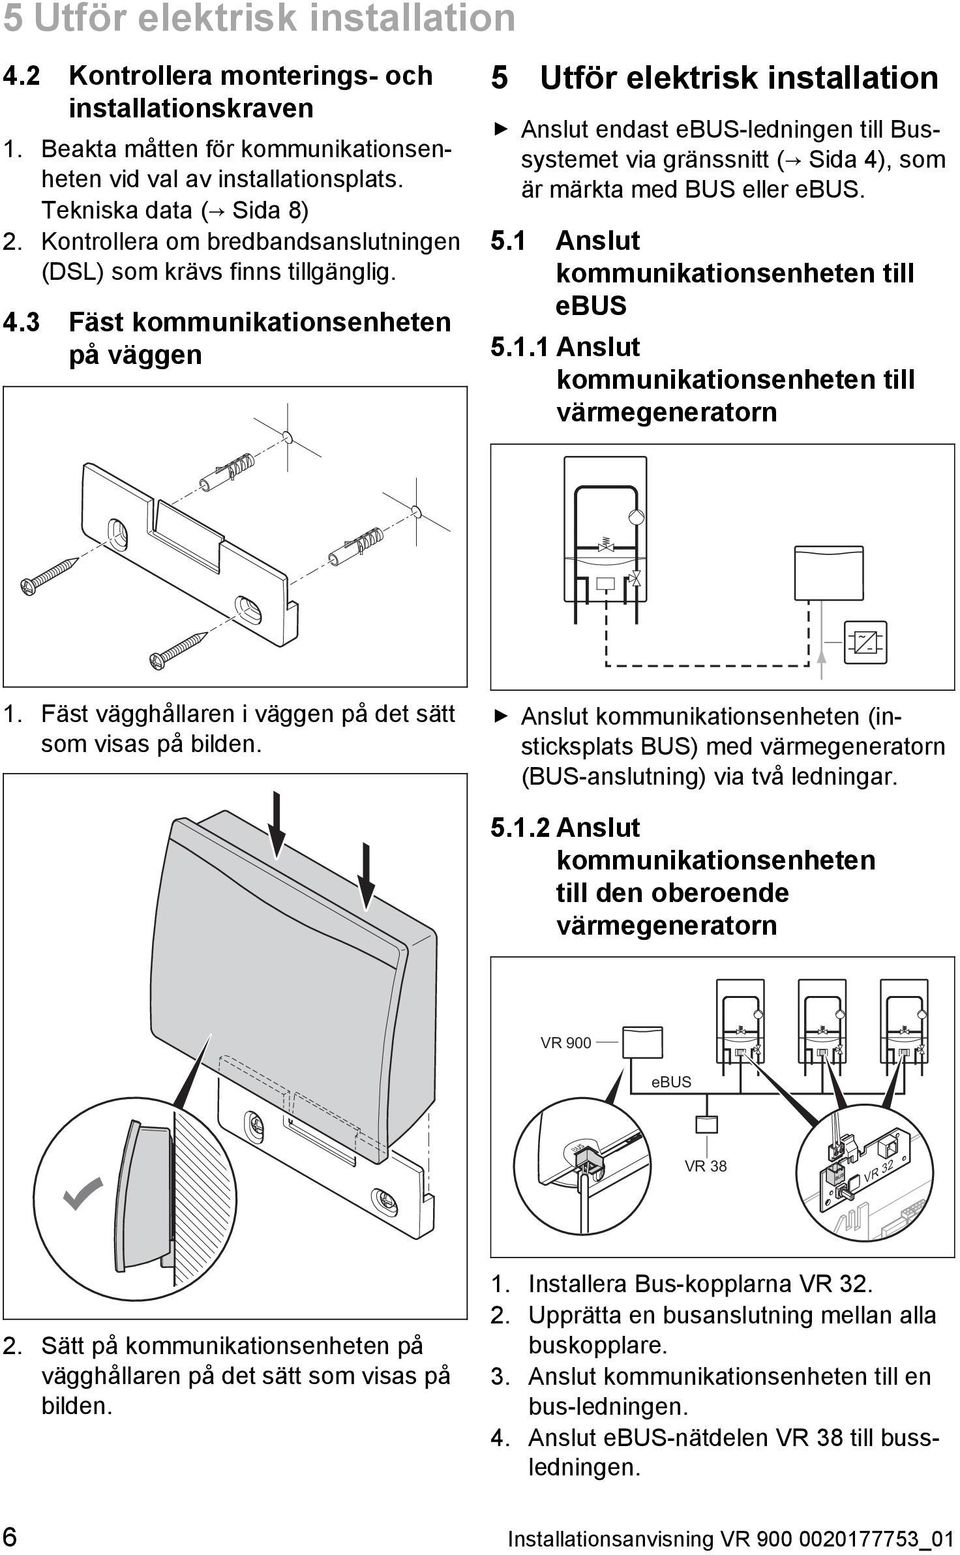 3 Fäst kommunikationsenheten på väggen 5 Utför elektrisk installation Anslut endast ebus -ledningen till Bus systemet via gränssnitt ( Sida 4), som är märkta med BUS eller ebus. 5.1 Anslut kommunikationsenheten till ebus 5.